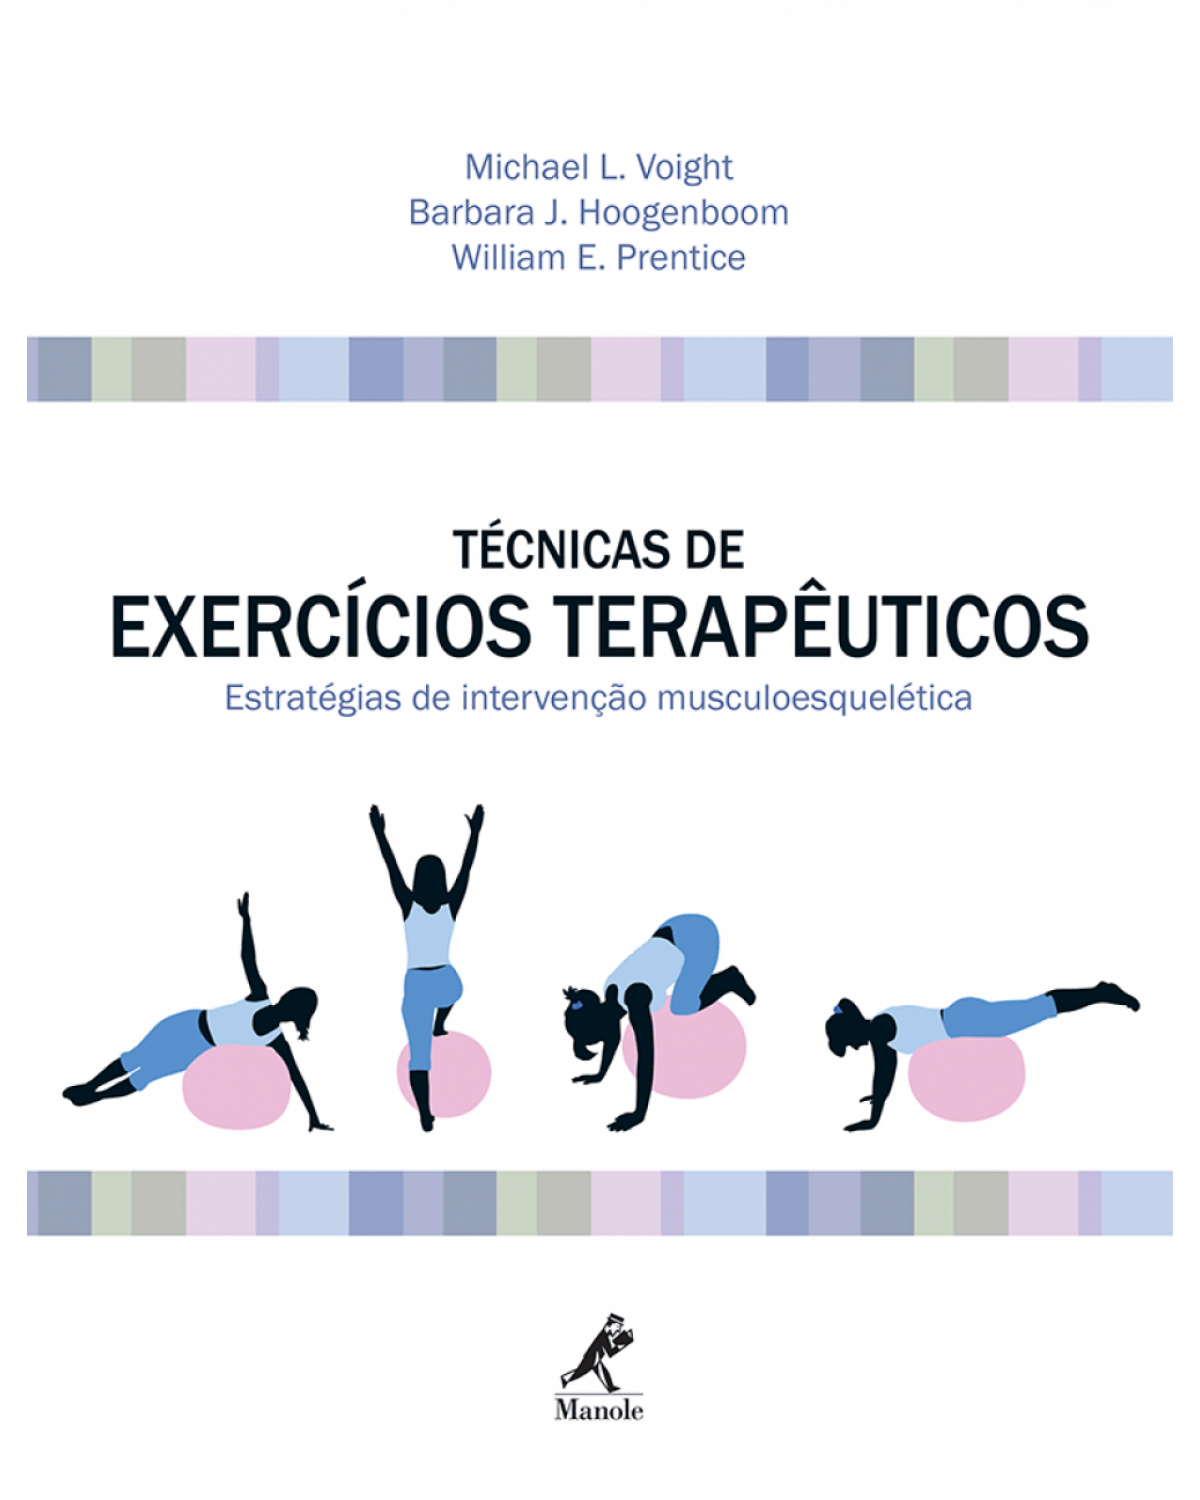 Técnicas de exercícios terapêuticos - Estratégias de intervenção musculoesquelética - 1ª Edição | 2014